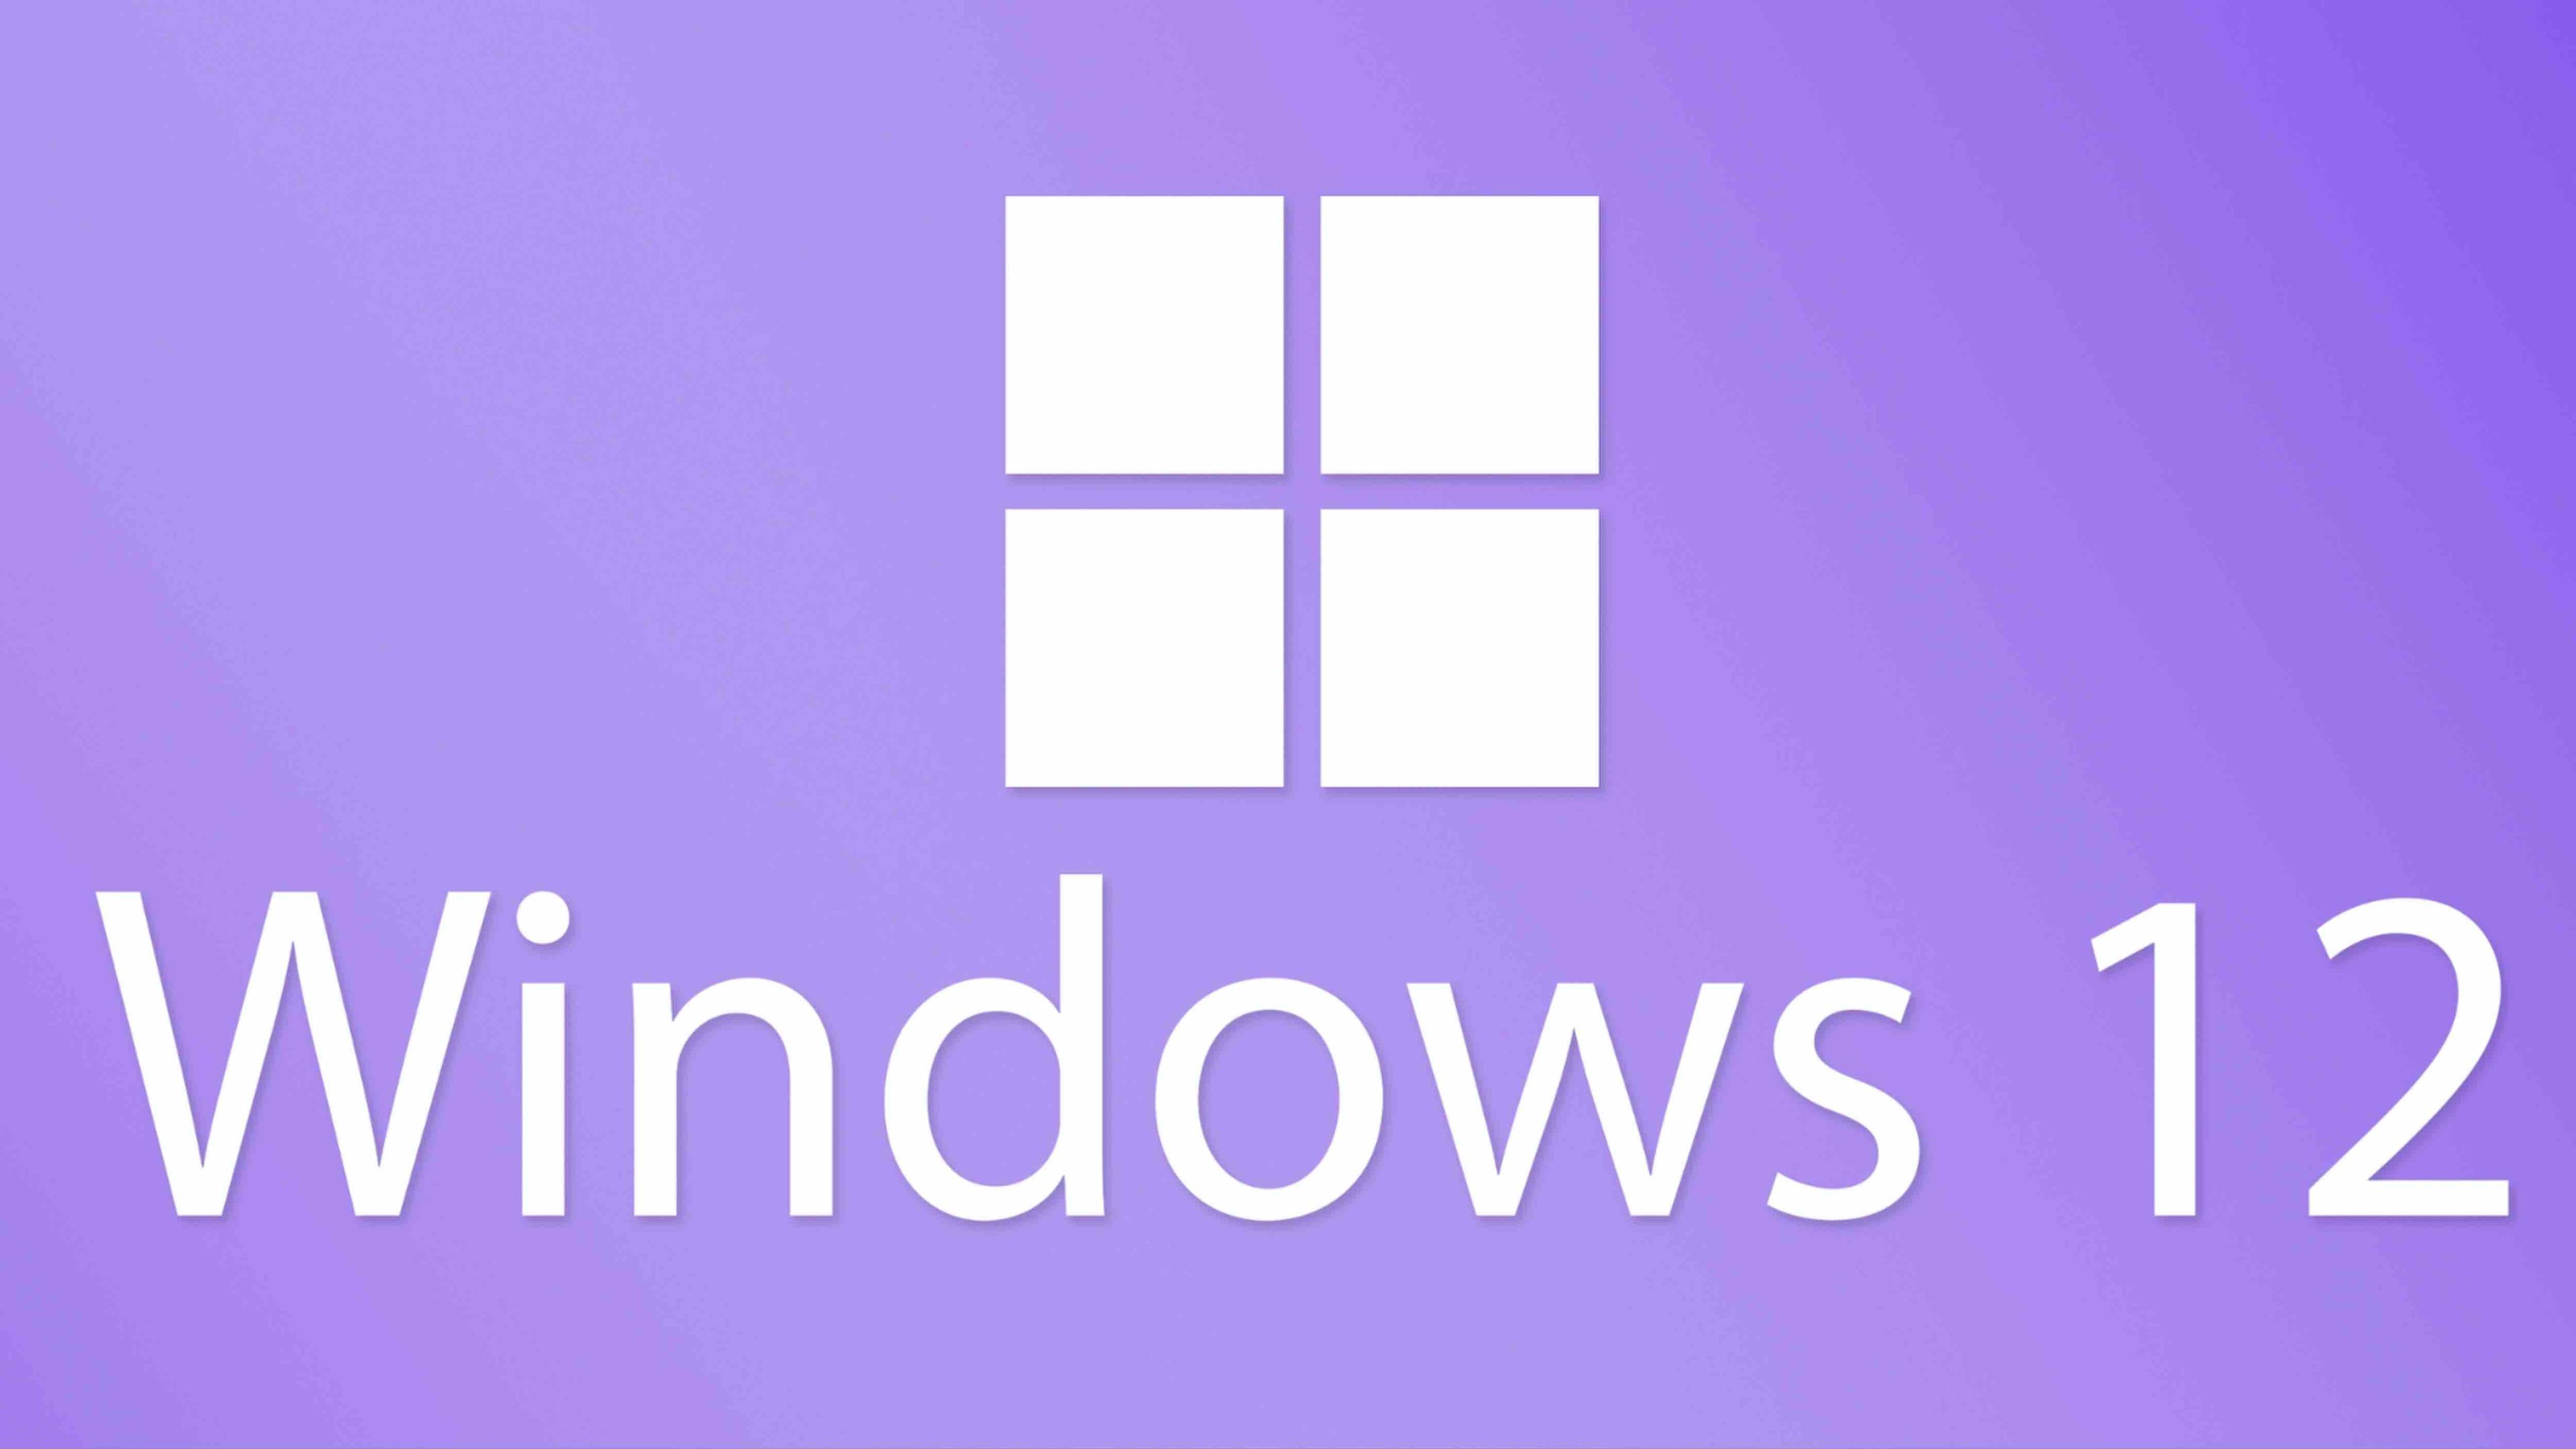 DE LA PERSISTENCIA DE WINDOWS 10 A LA PROMESA DE WINDOWS 12  Windows-12-3219514